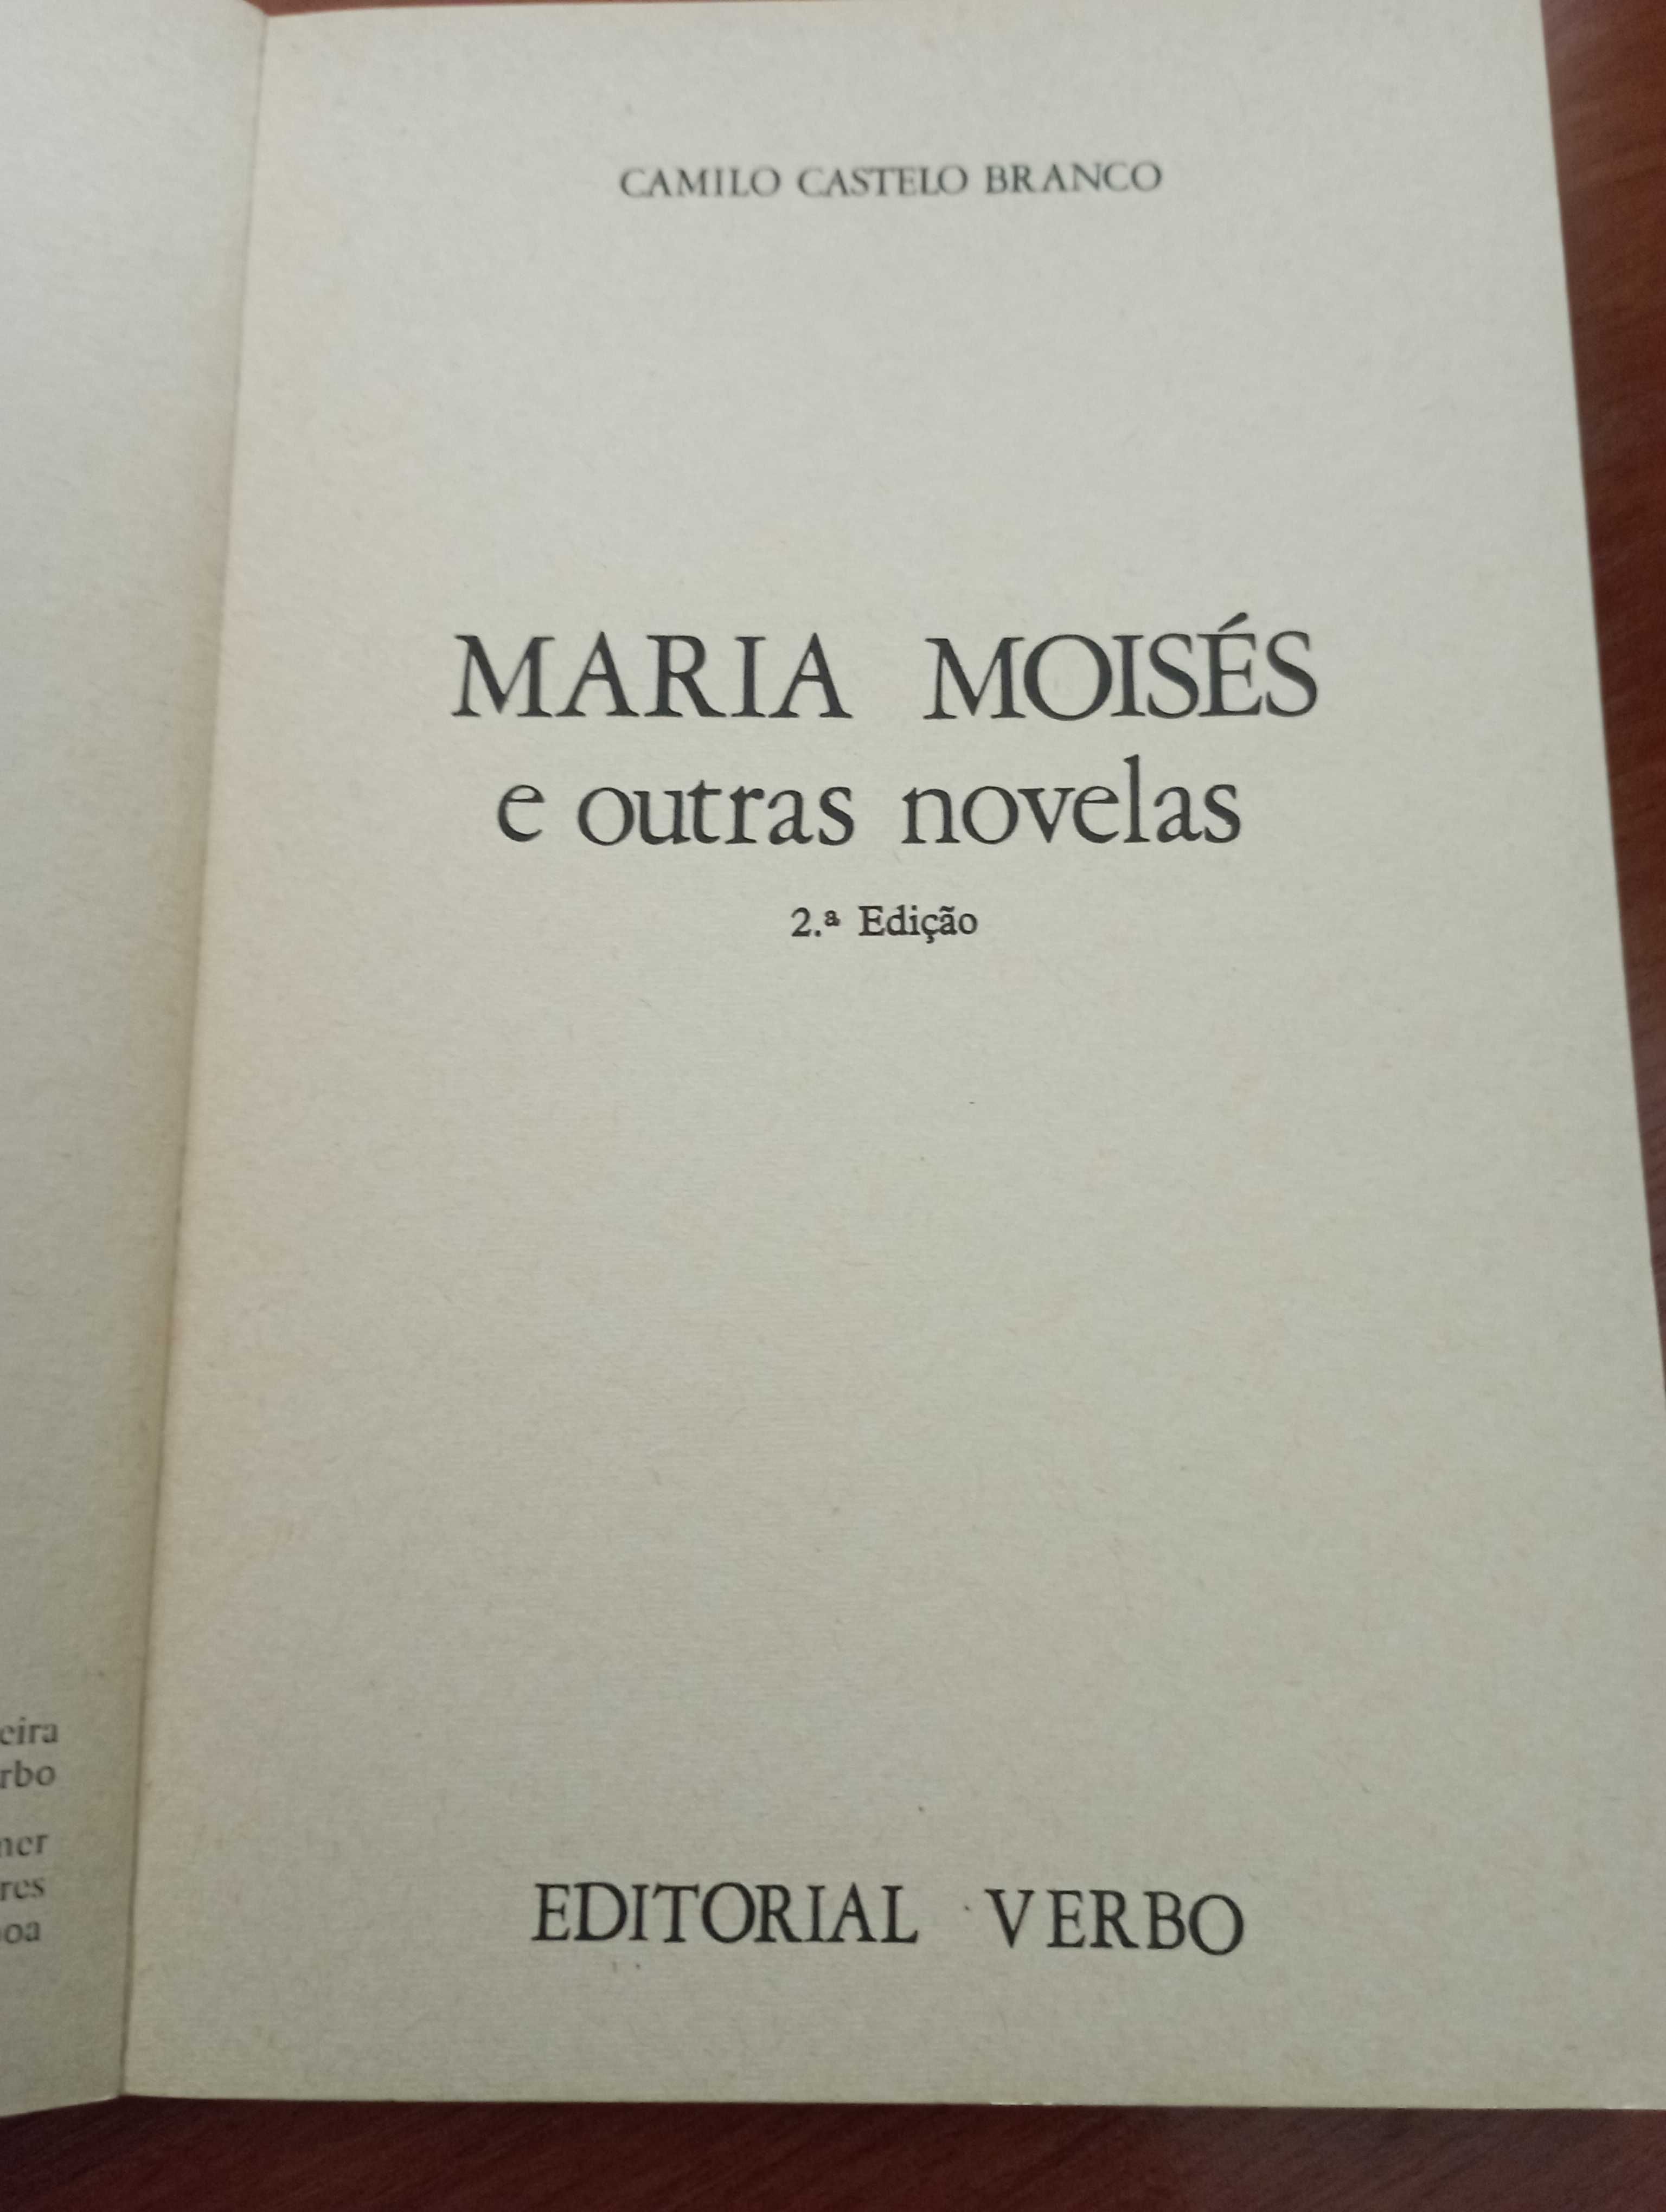 Maria Moisés de Camilo Castelo Branco